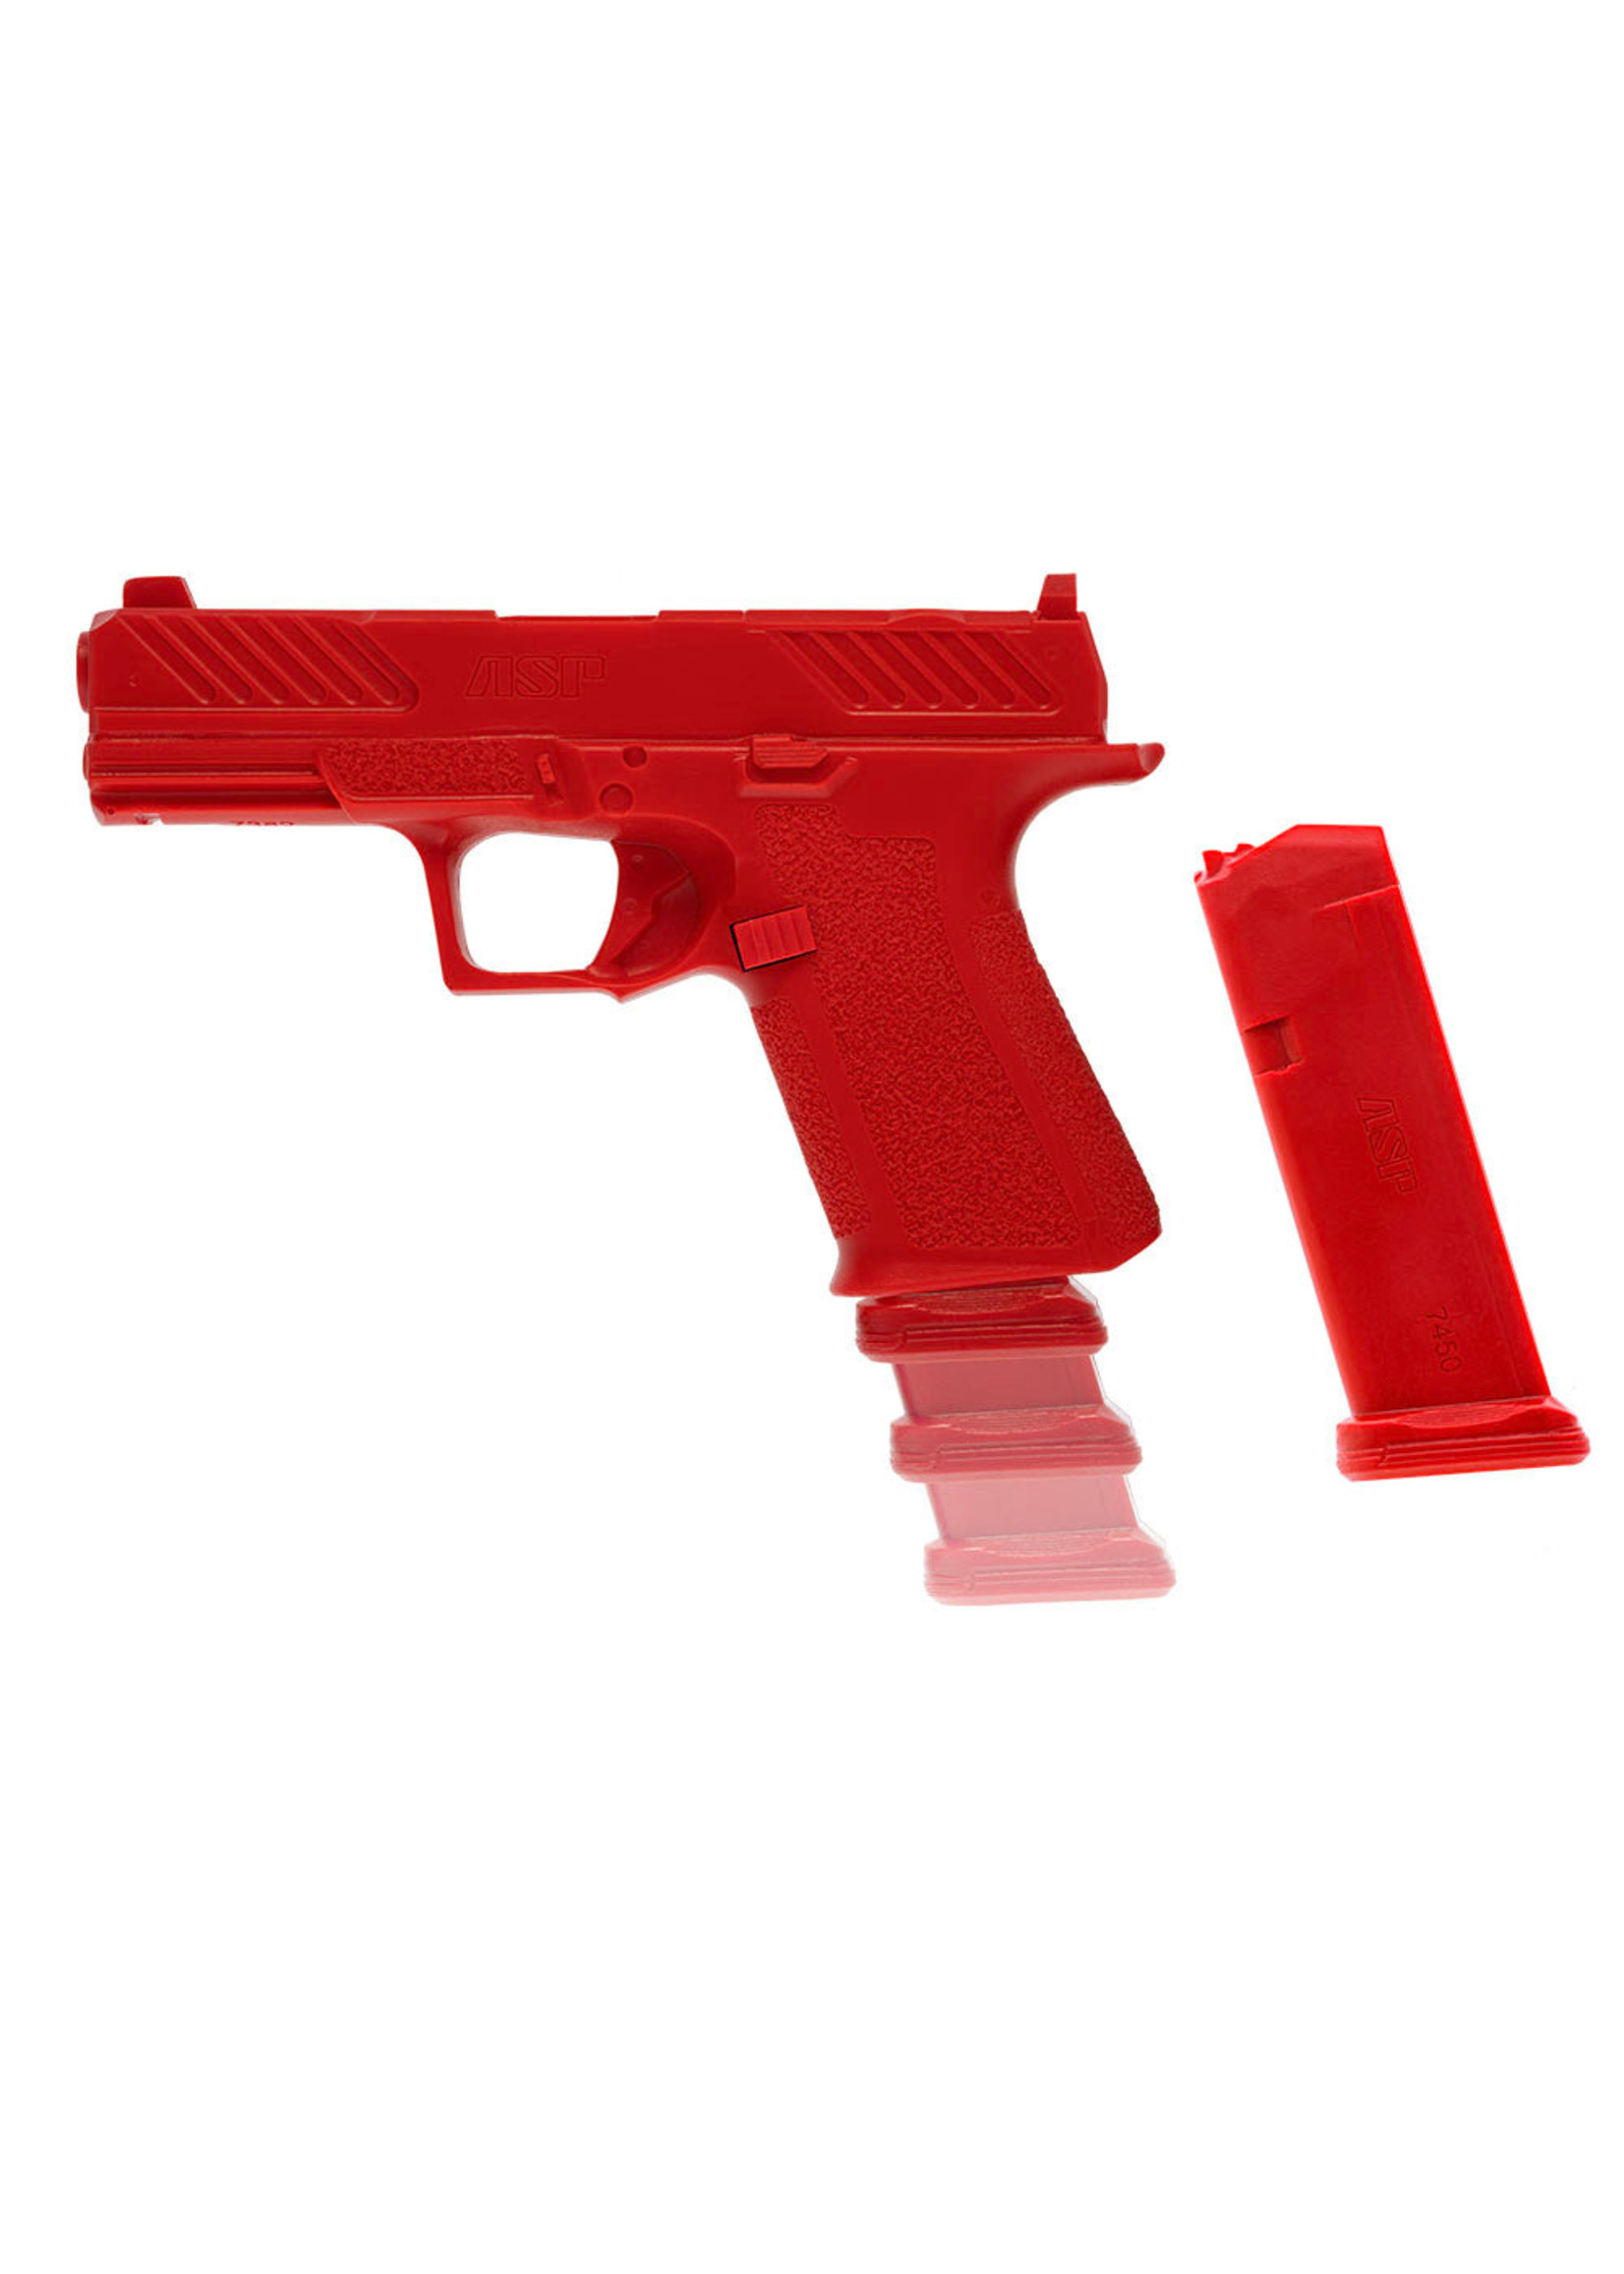 ARMAMENT SYSTEMS & PROCEDURES (ASP) ENHANCED RED GUNS